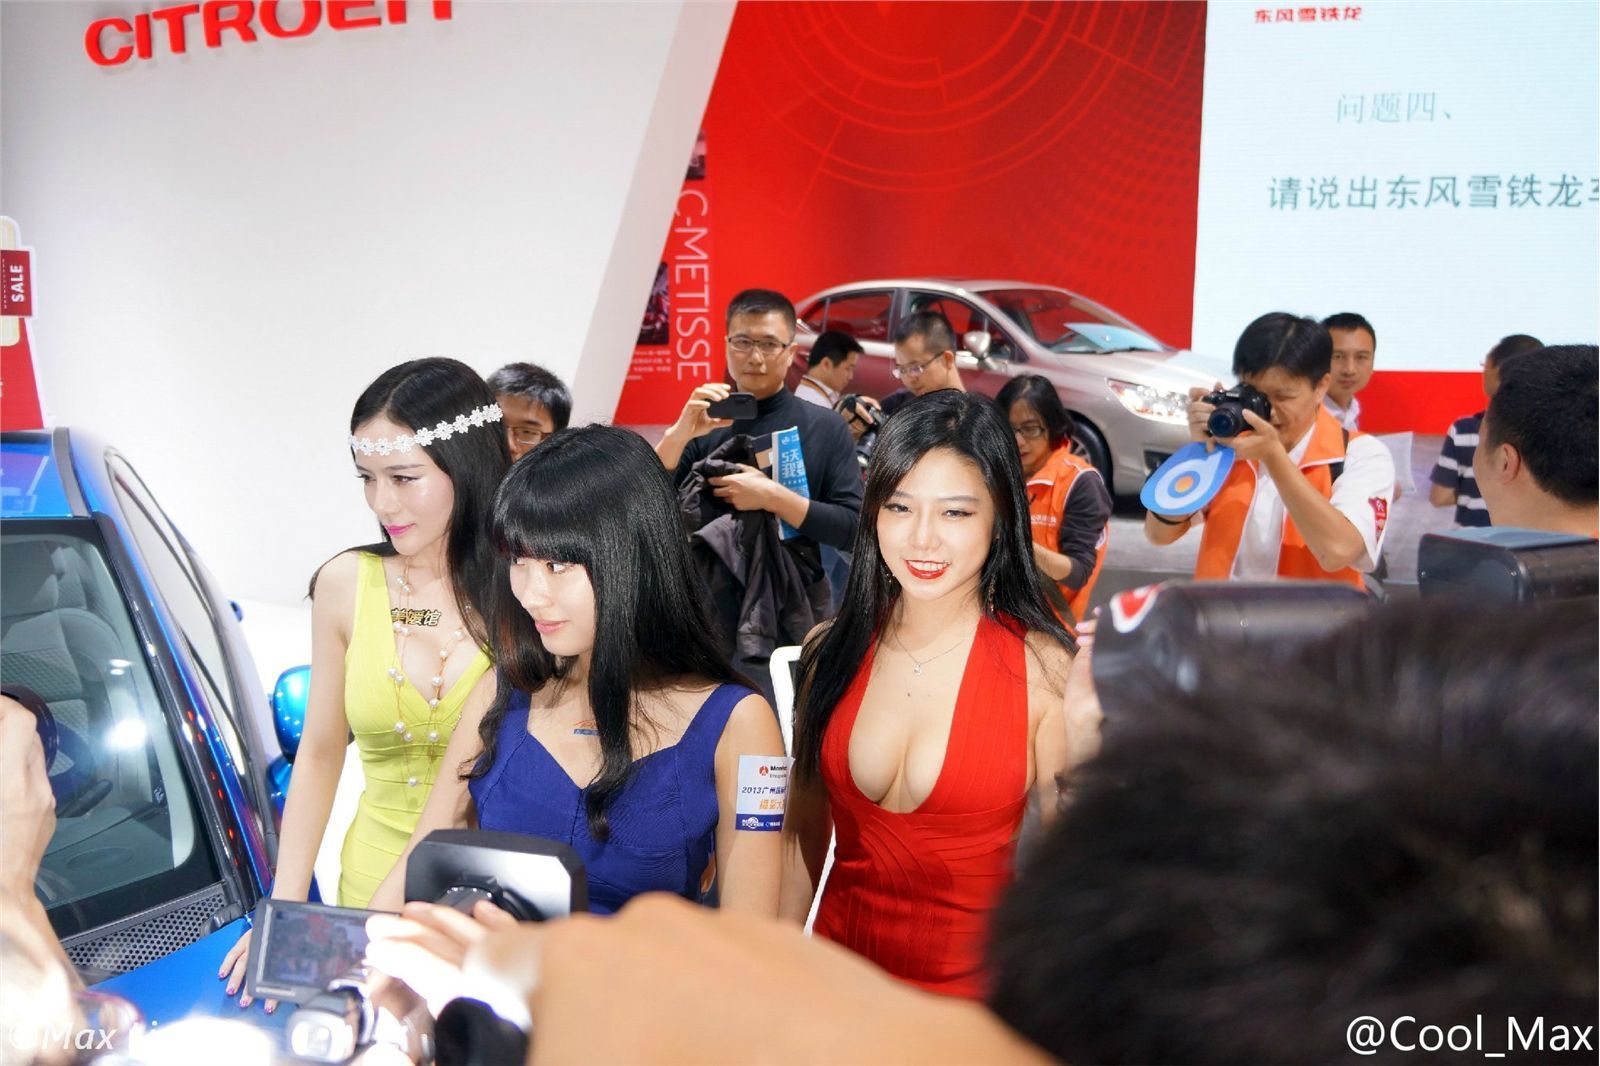 Luvianmm, Meiyuan Pavilion, Guangzhou Auto Show